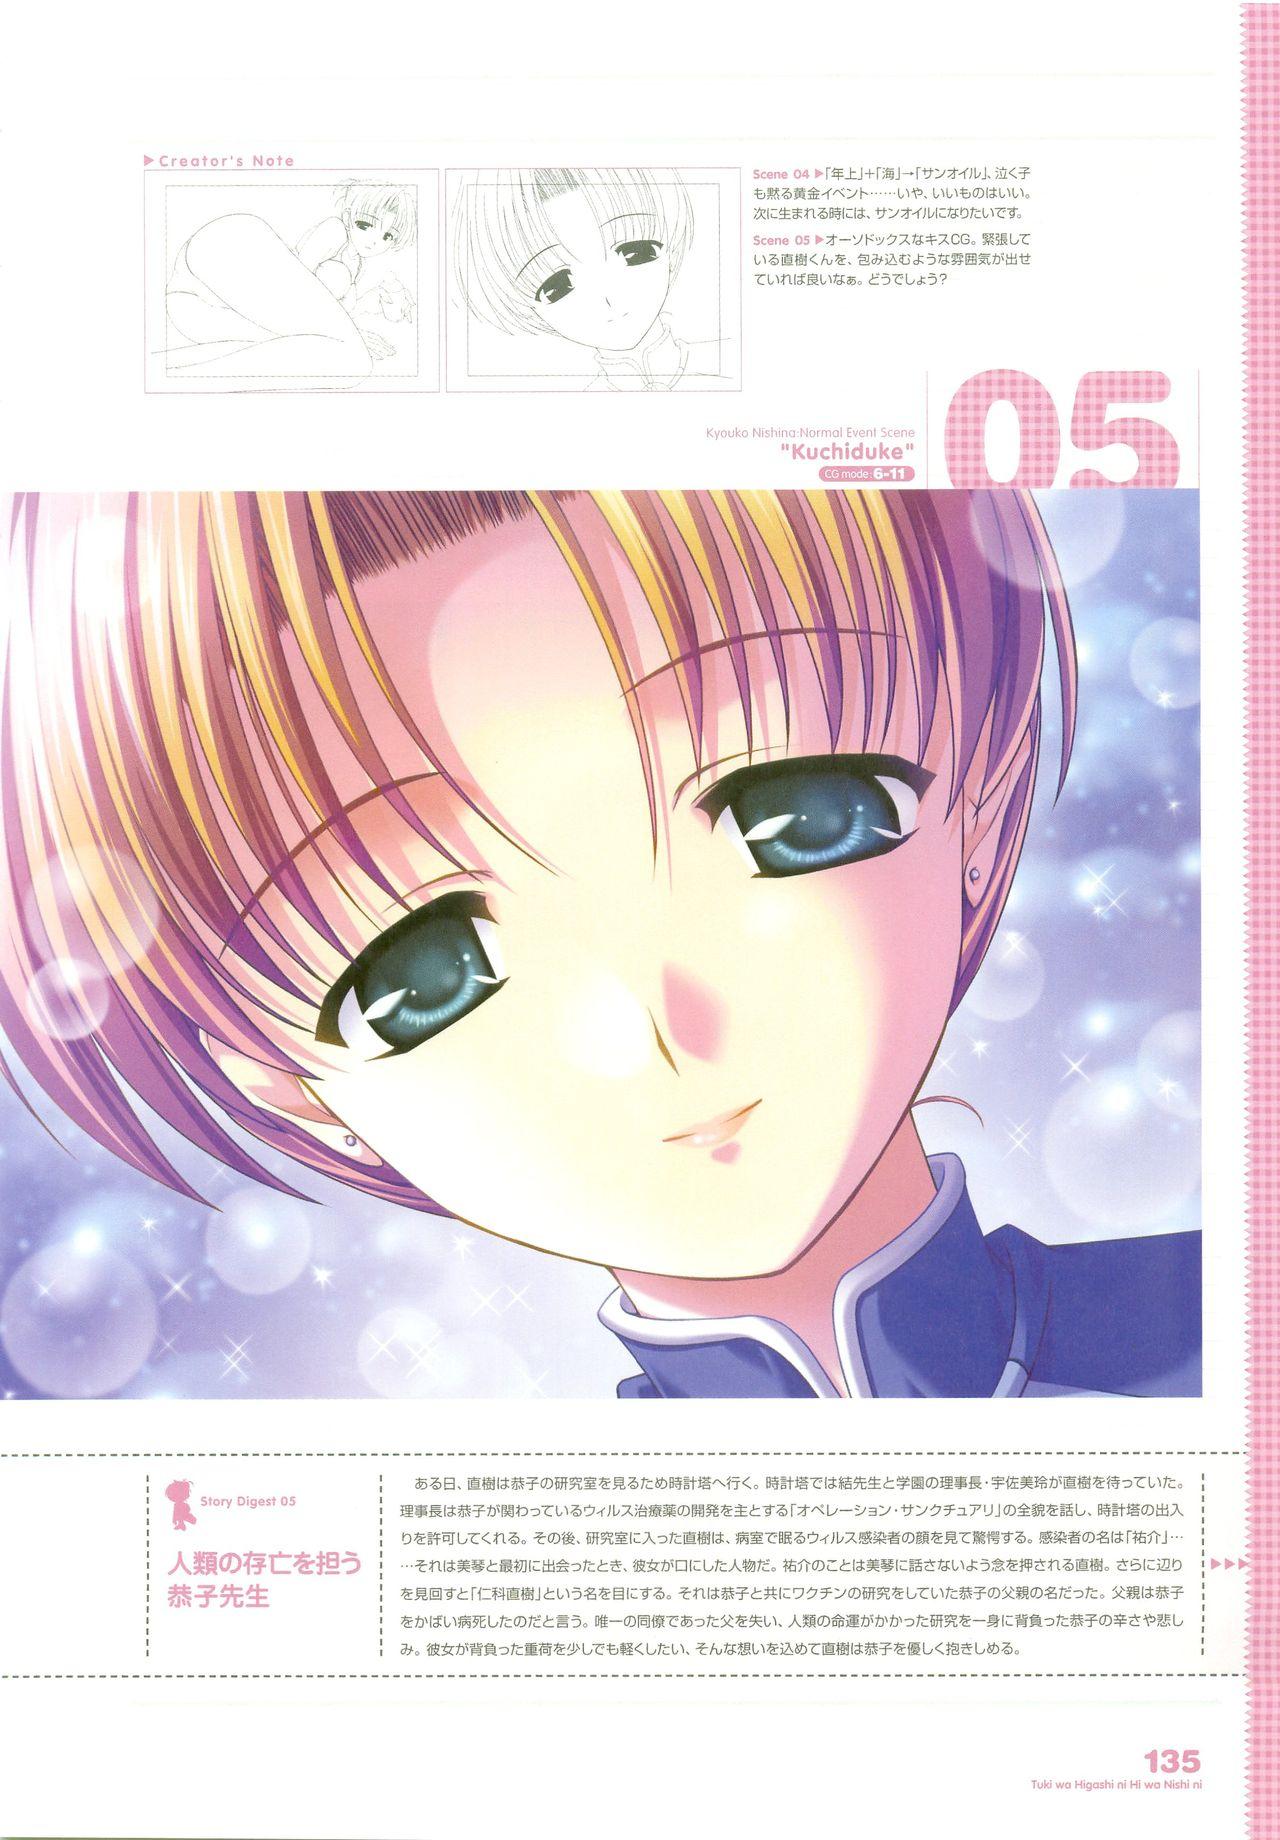 Tsuki wa Higashi ni Hi wa Nishi ni - Operation Sanctuary - Visual Fan Book Shokai Ban 167